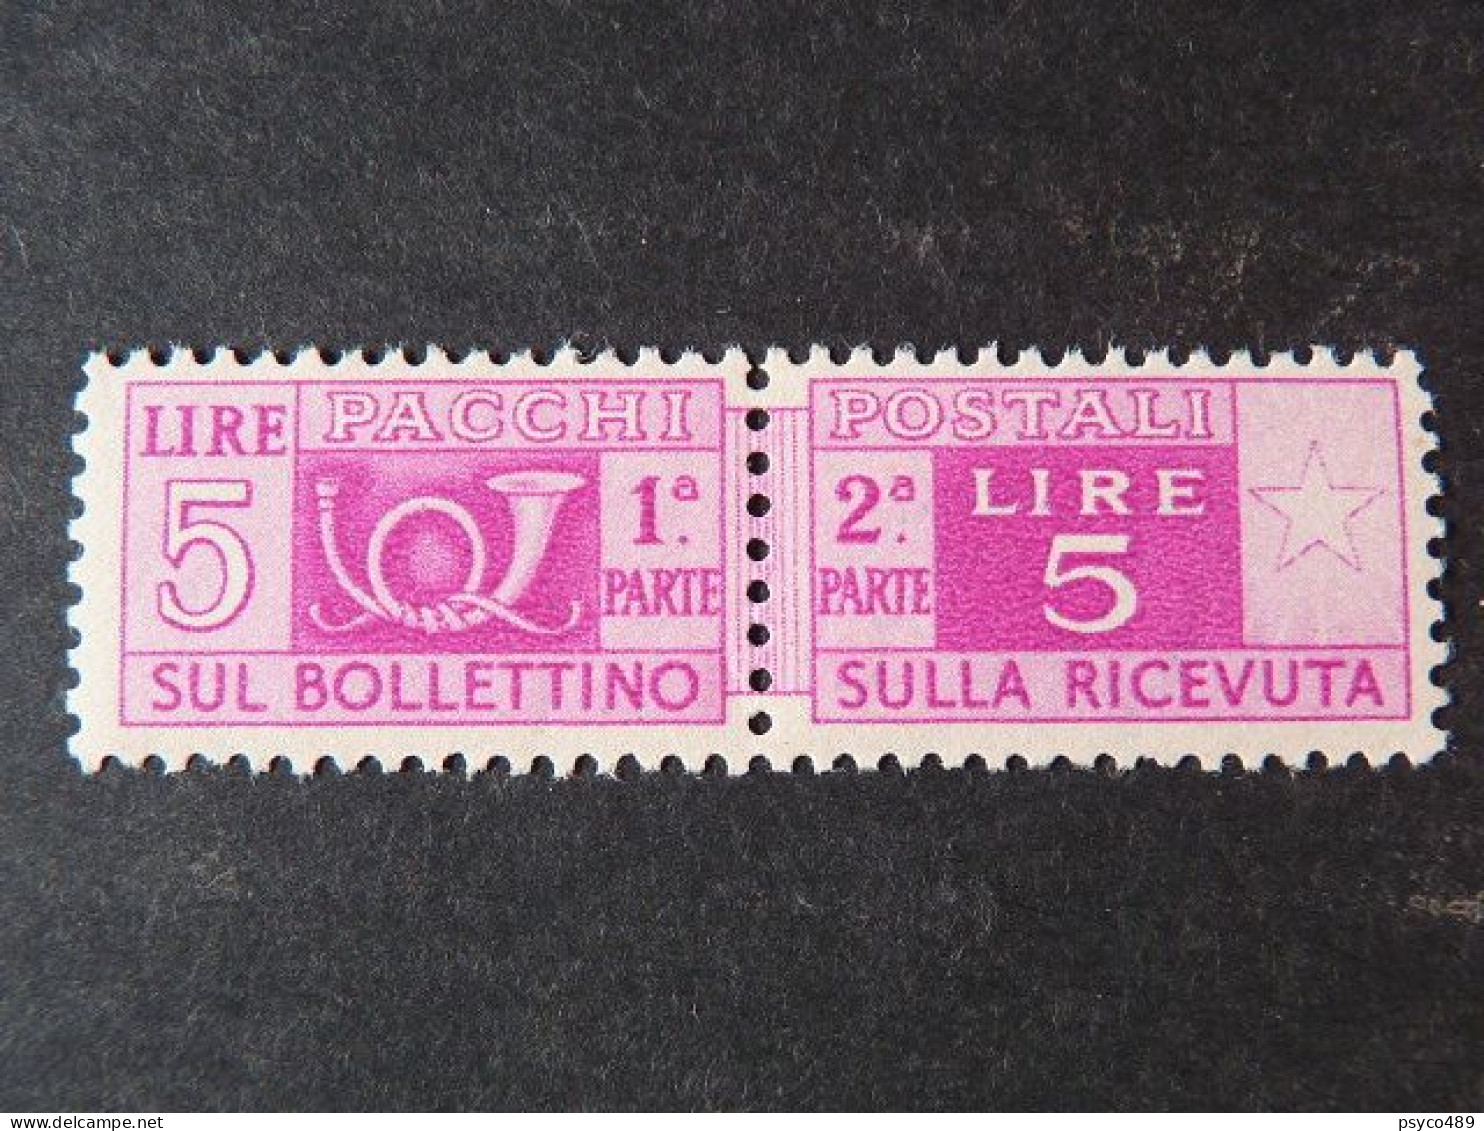 ITALIA Repubblica Pacchi -1946-57- "Corno Cifra" £. 5 Varietà Filigrana MNH** (descrizione) - Pacchi Postali